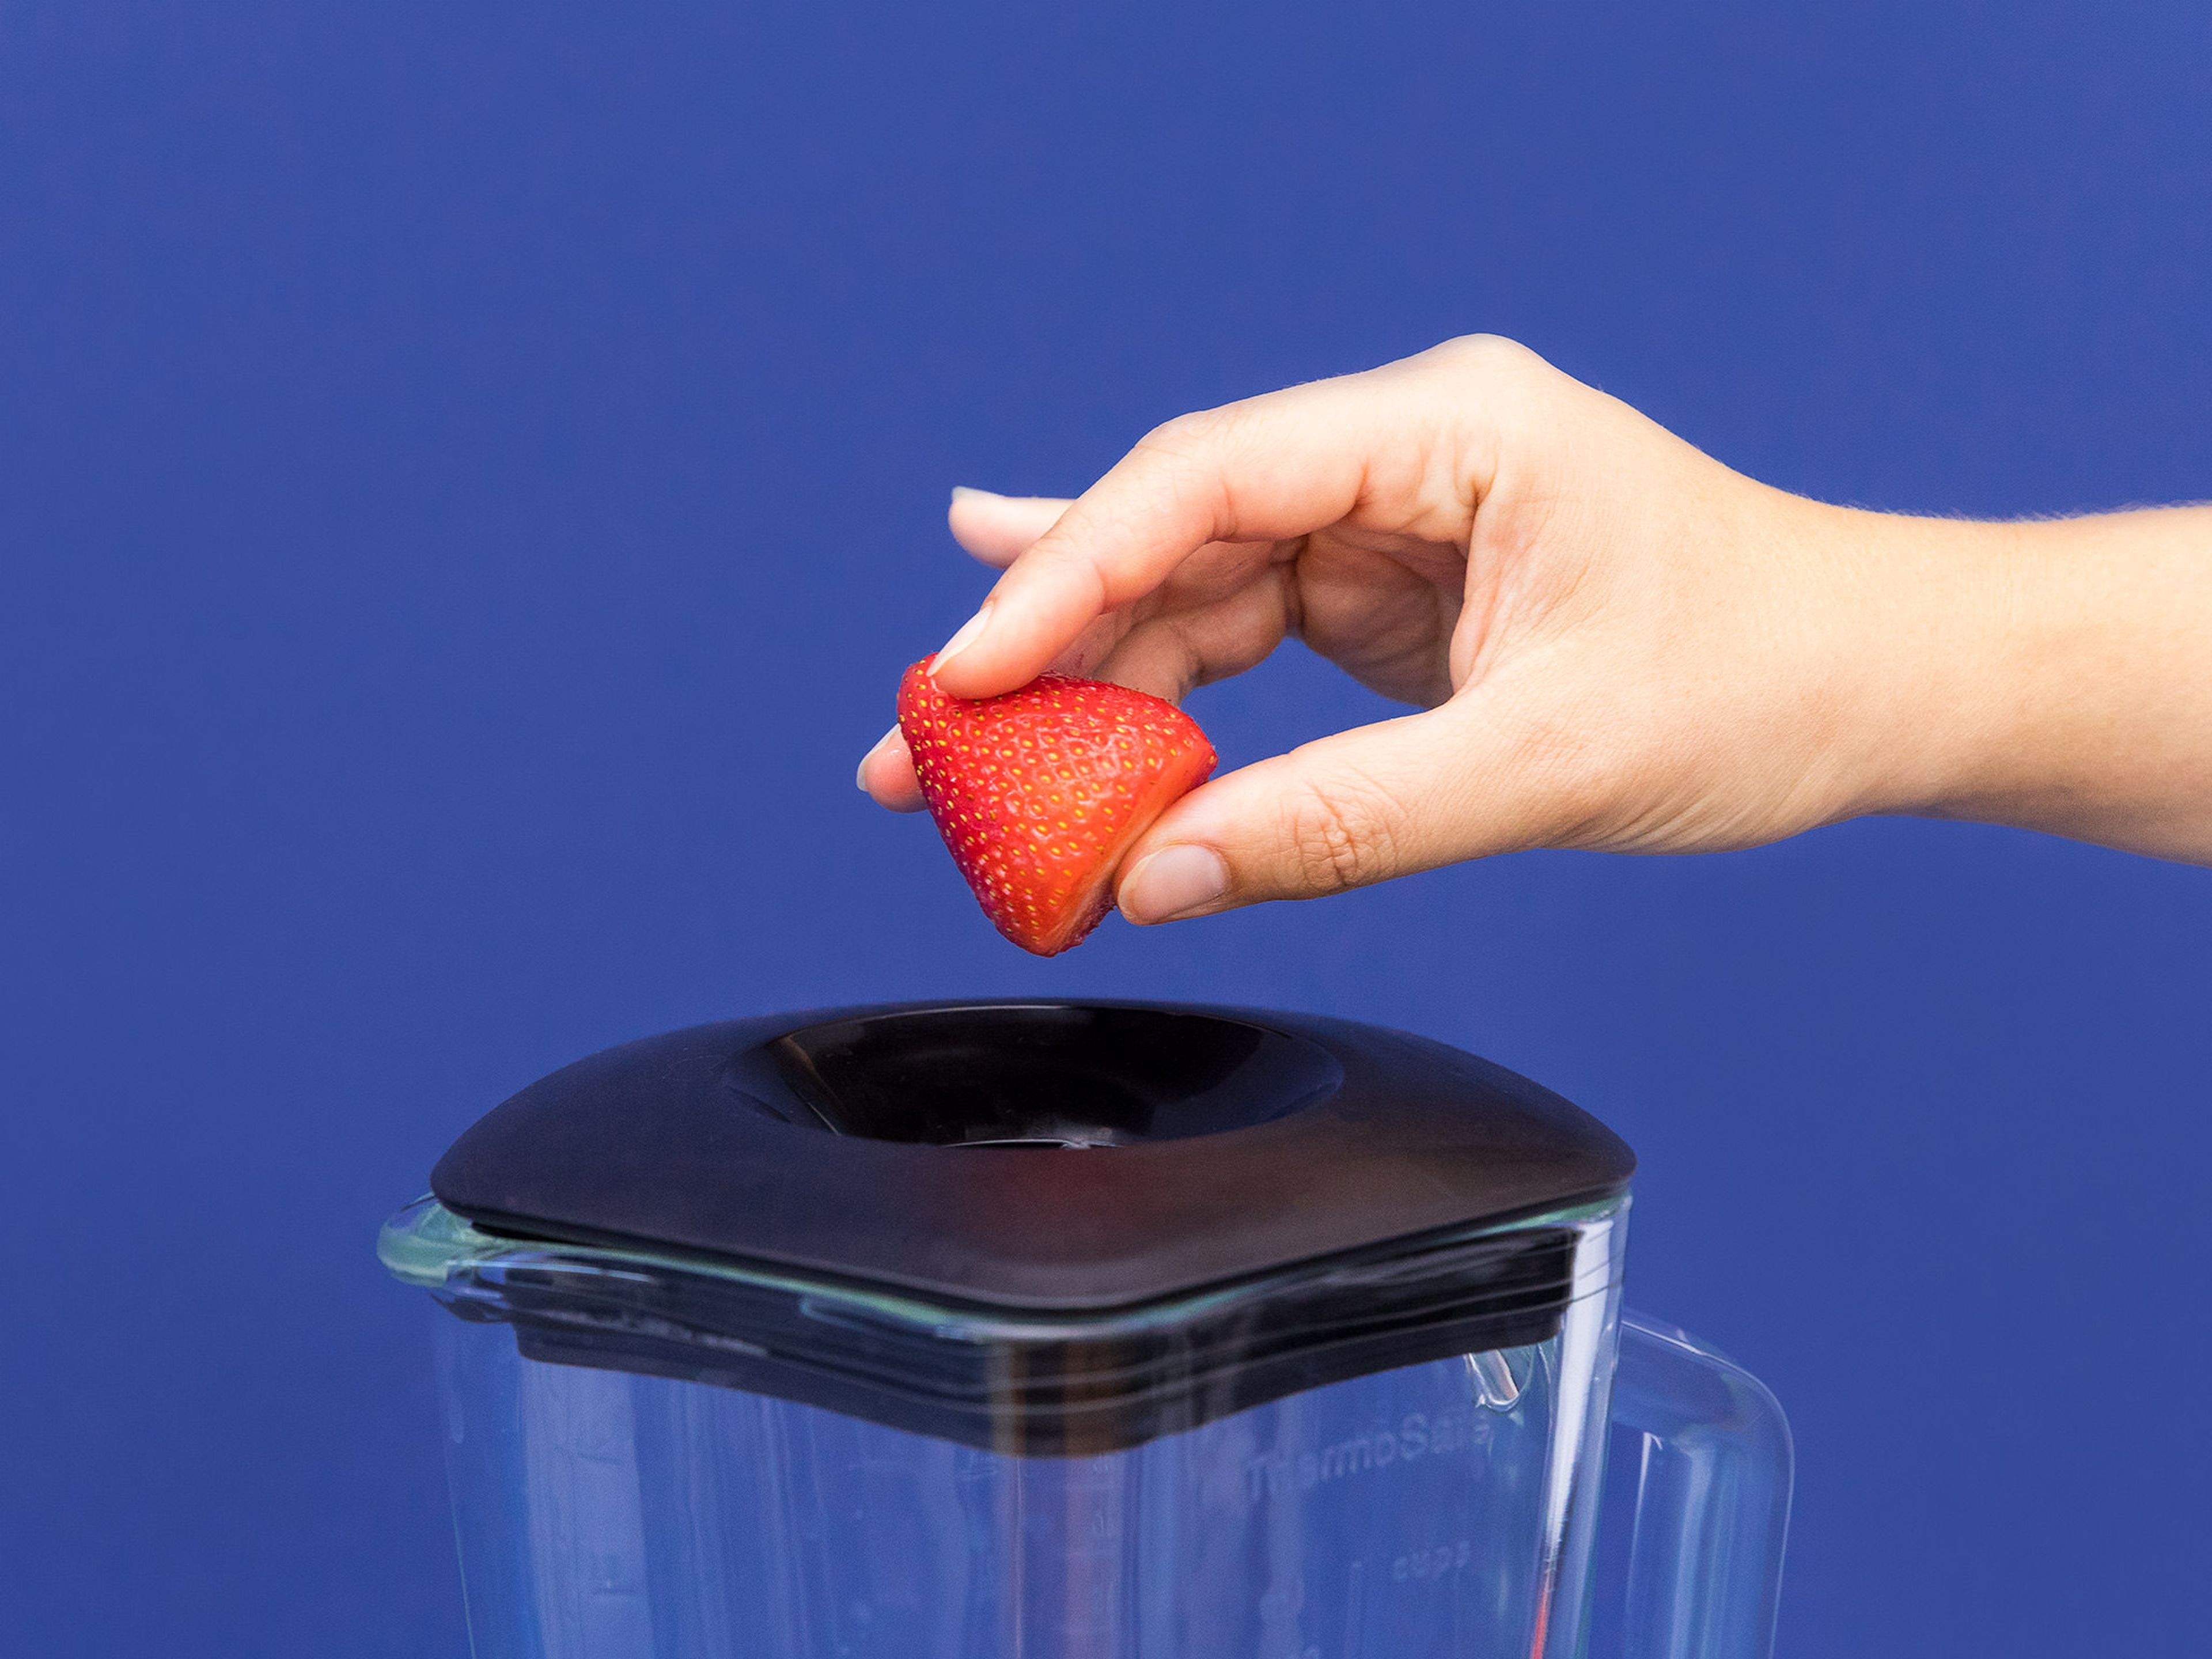 Erdbeeren waschen und entstielen. Den Großteil der Erdbeeren in einem Standmixer pürieren.